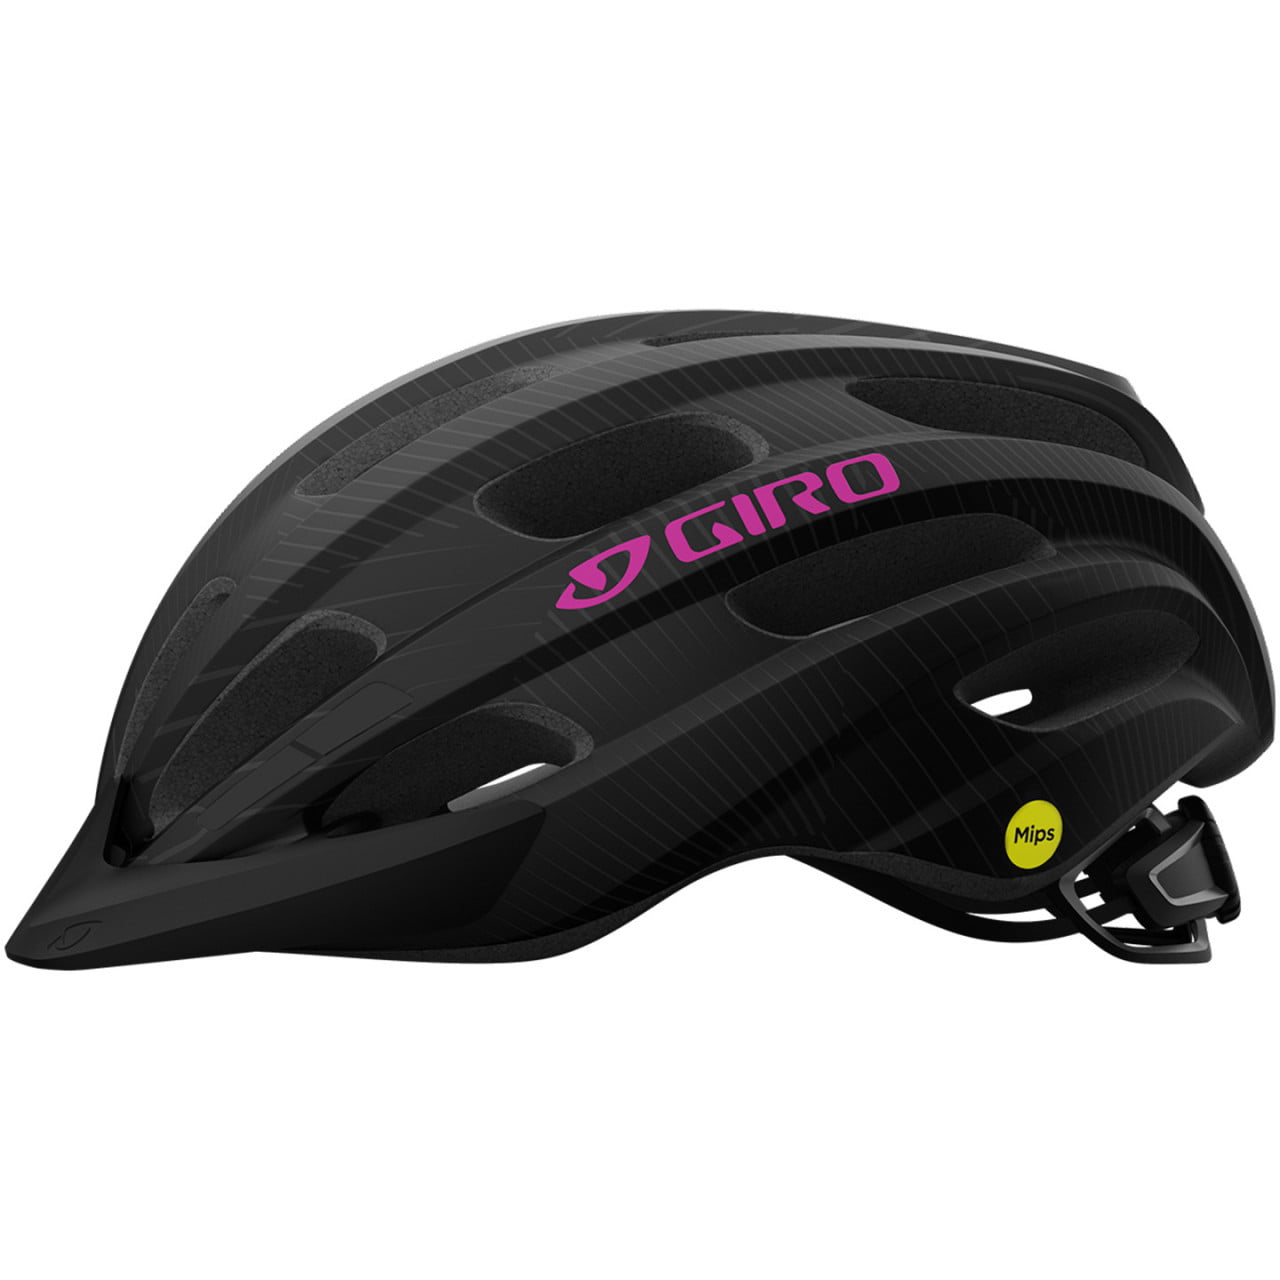 Vasona Mips Women's MTB Helmet